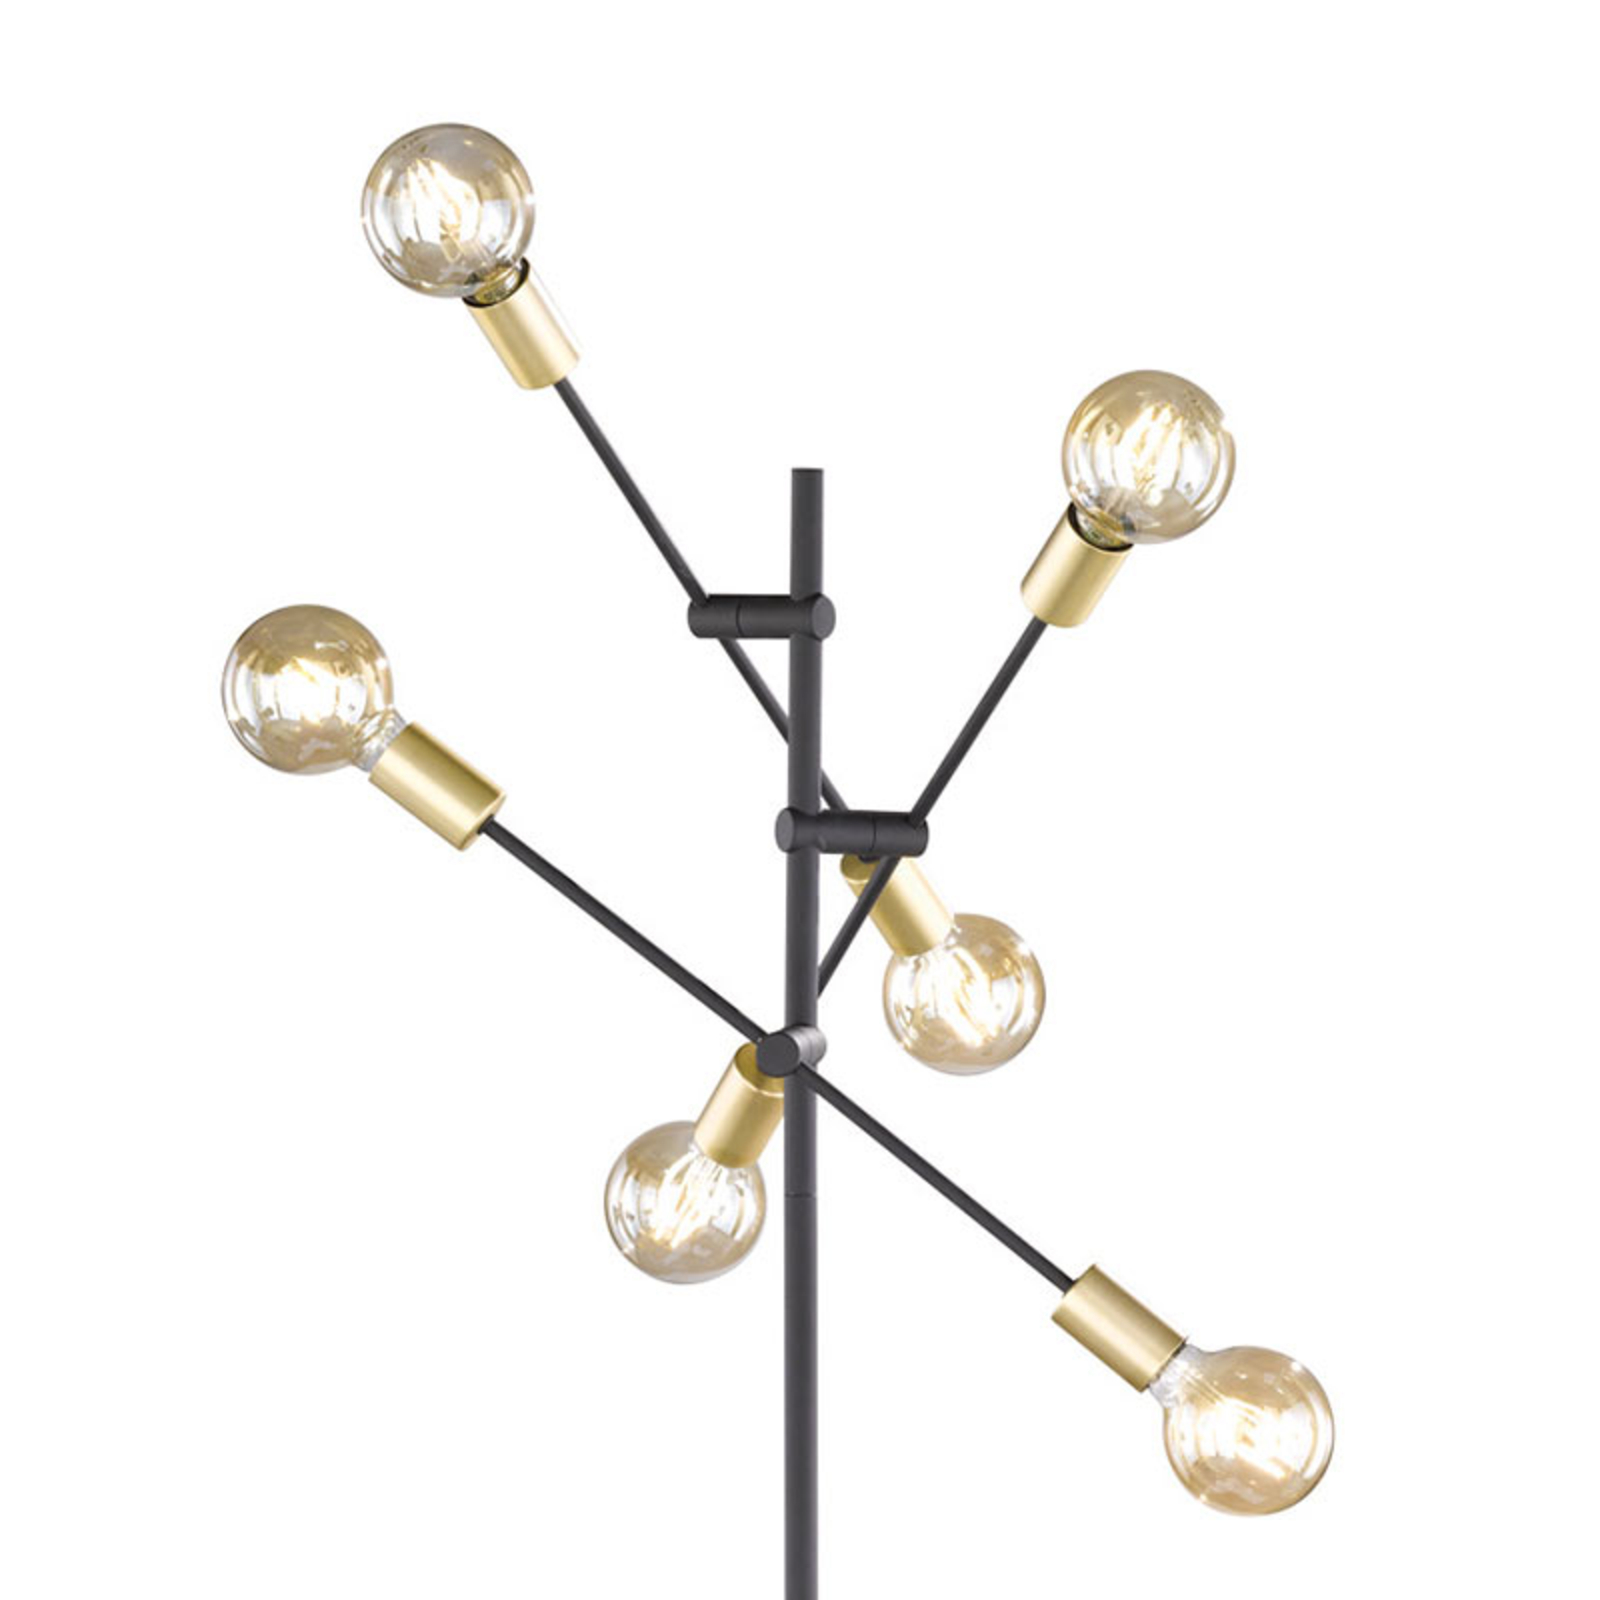 Vloerlamp Cross in trendy zwart-goud ontwerp